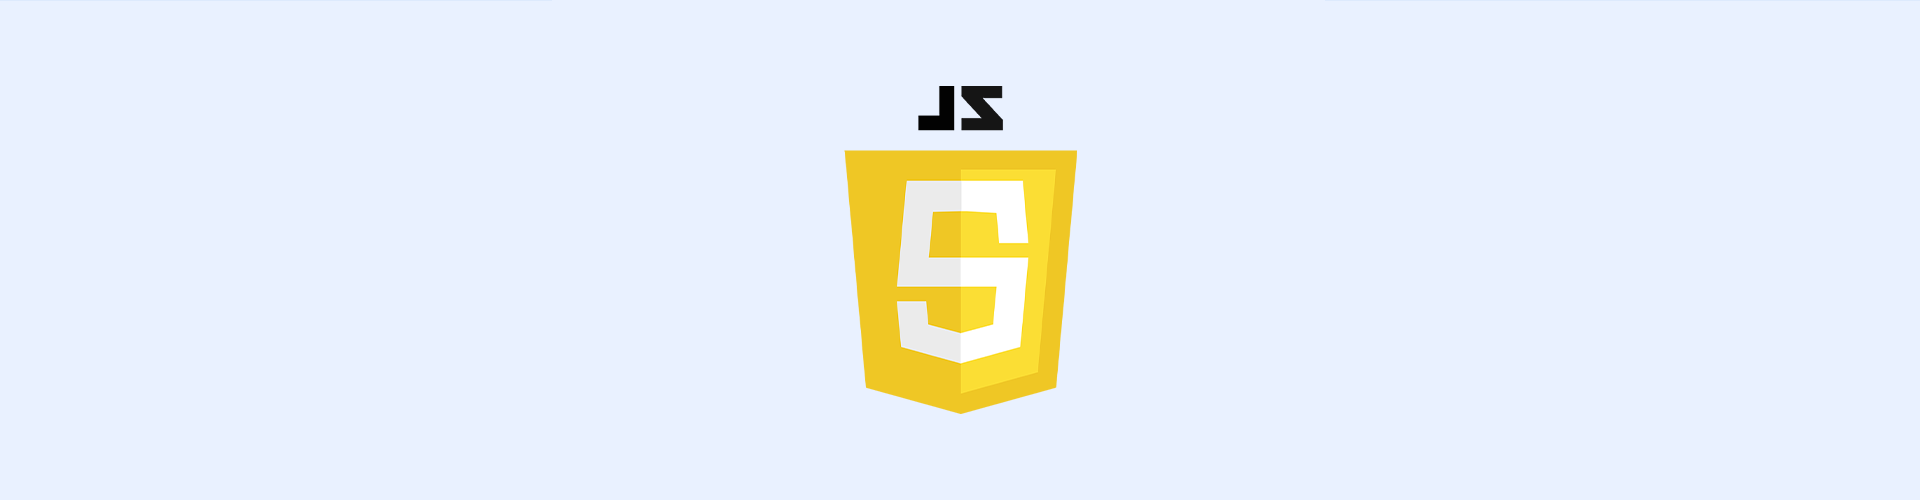 Hostarex blog: JavaScript nədir? Nə üçün istifadə edilir?